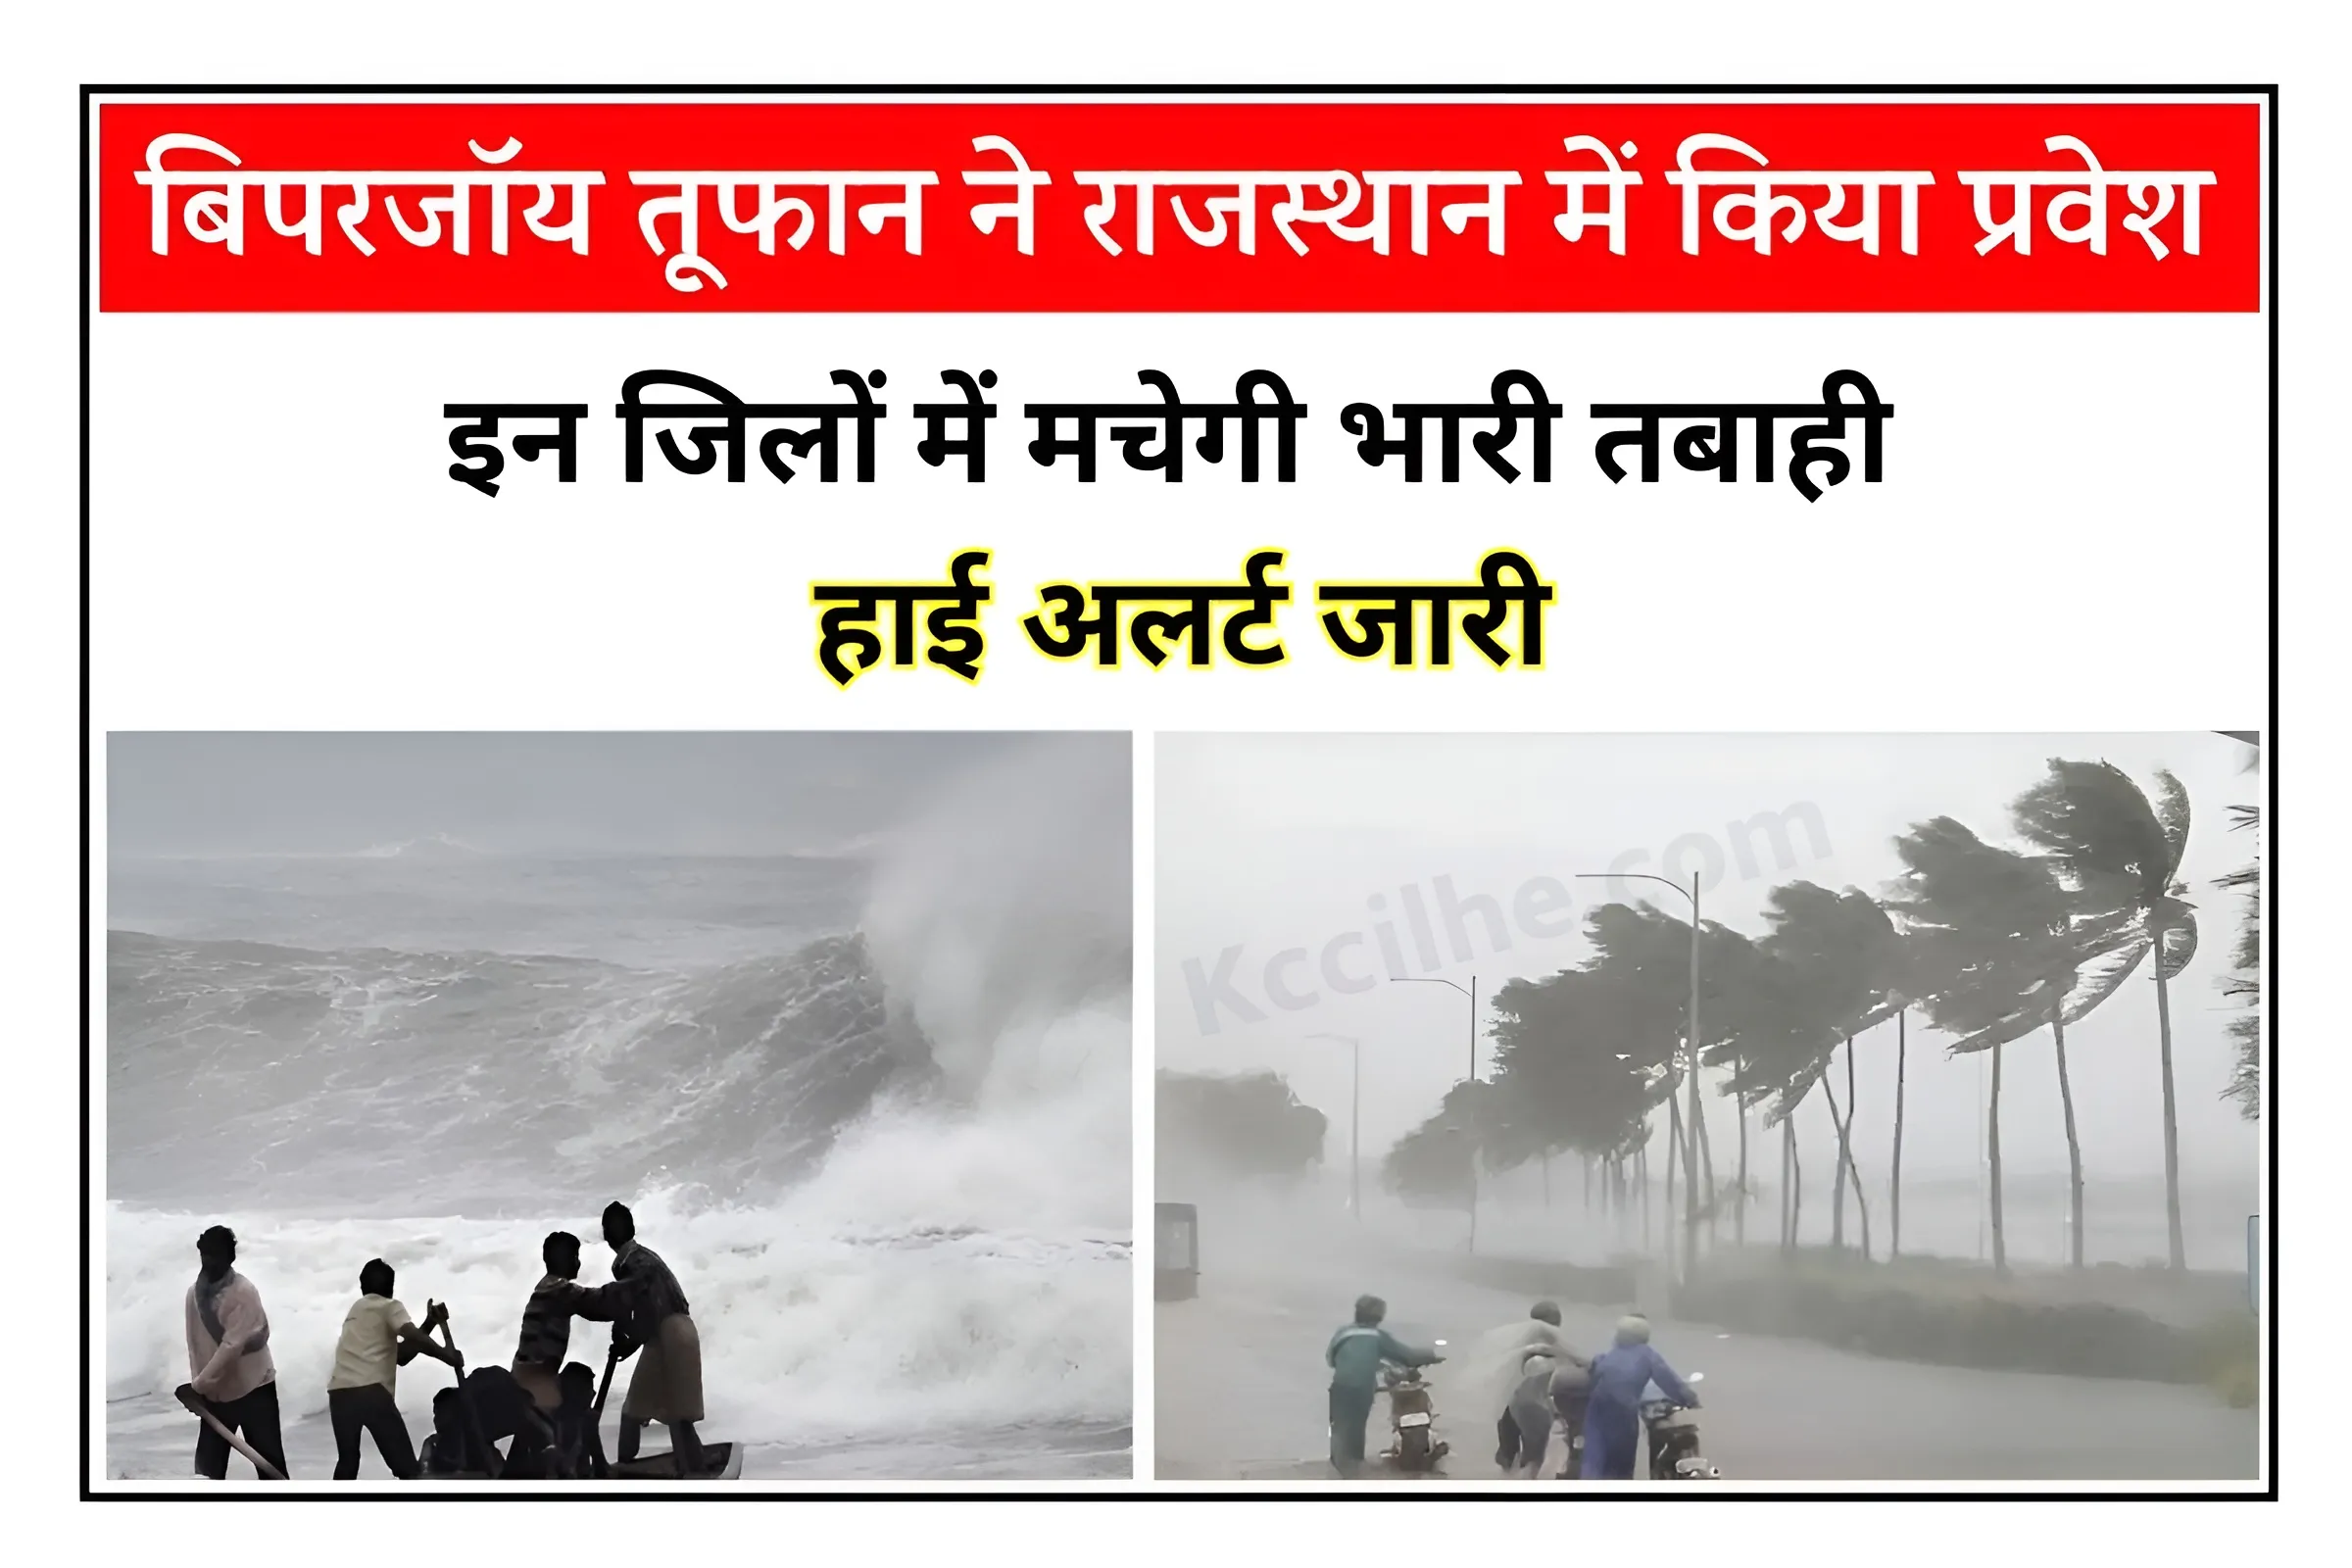 Rajasthan Biporjoy Cyclone Alert